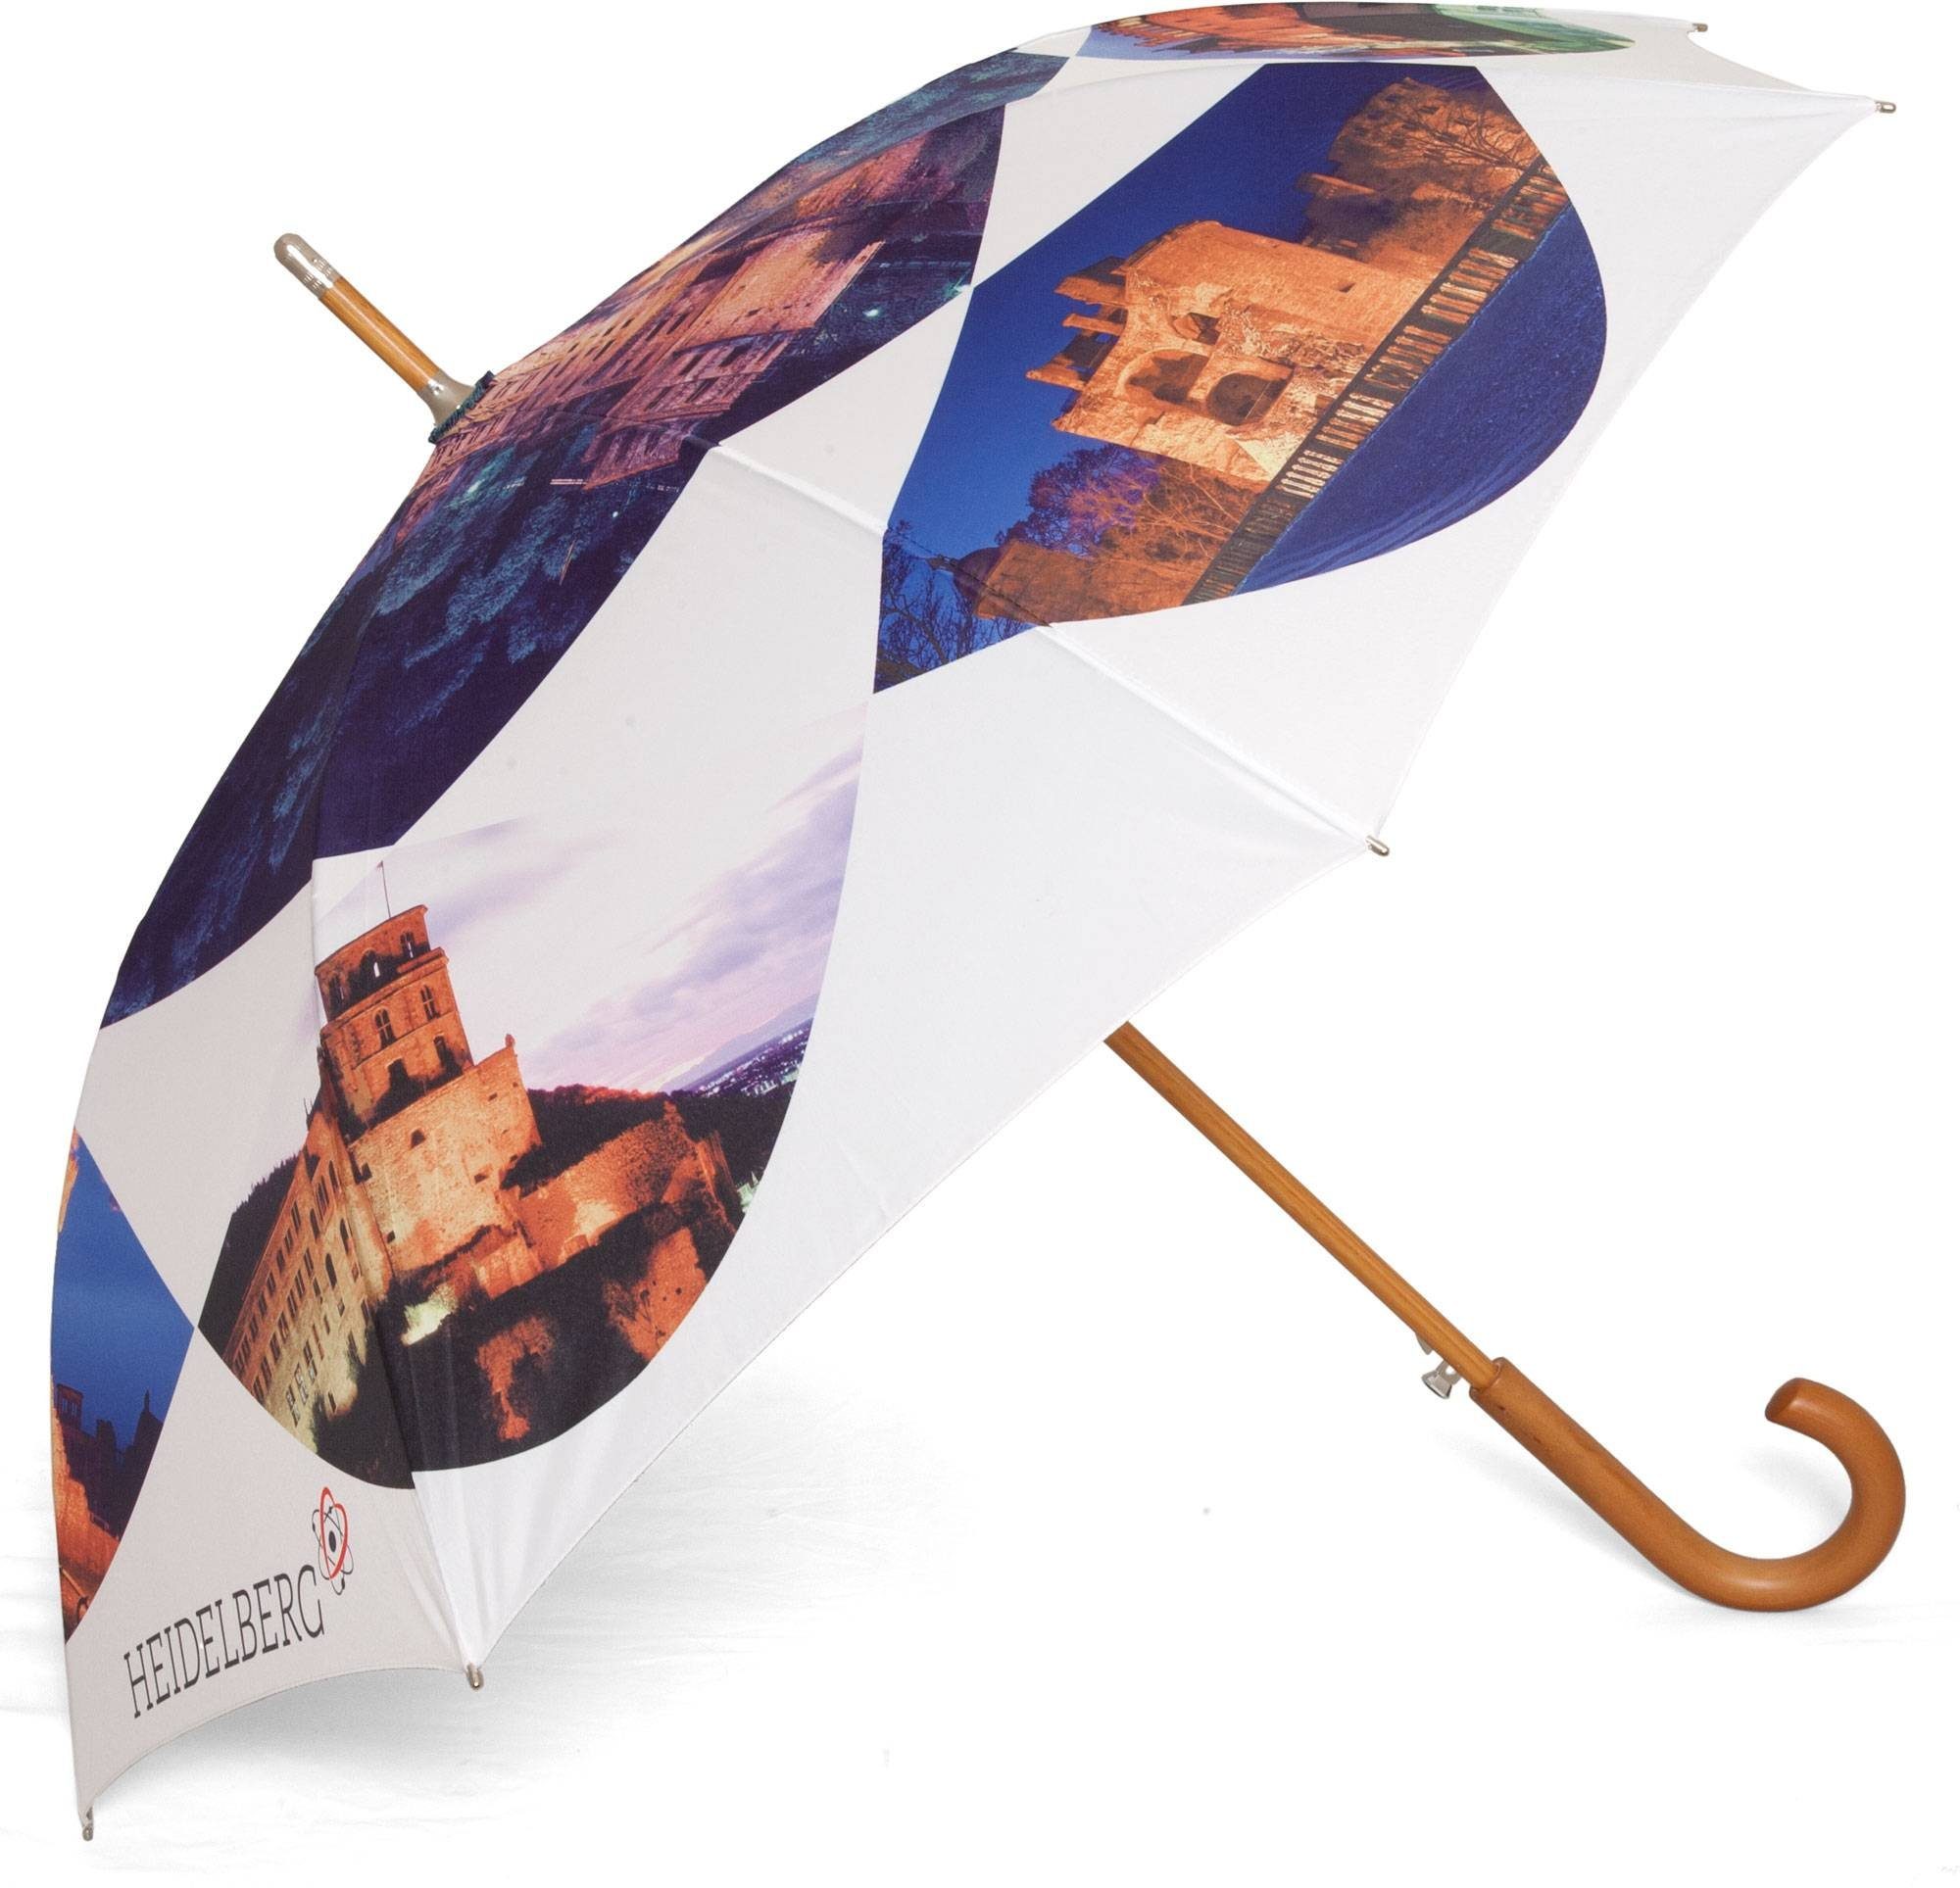 Stockregenschirm Regenschirm Motiv ROSEMARIE mit Heidelberg SCHULZ Stockschirm Solider Regenschirm Heidelberg,